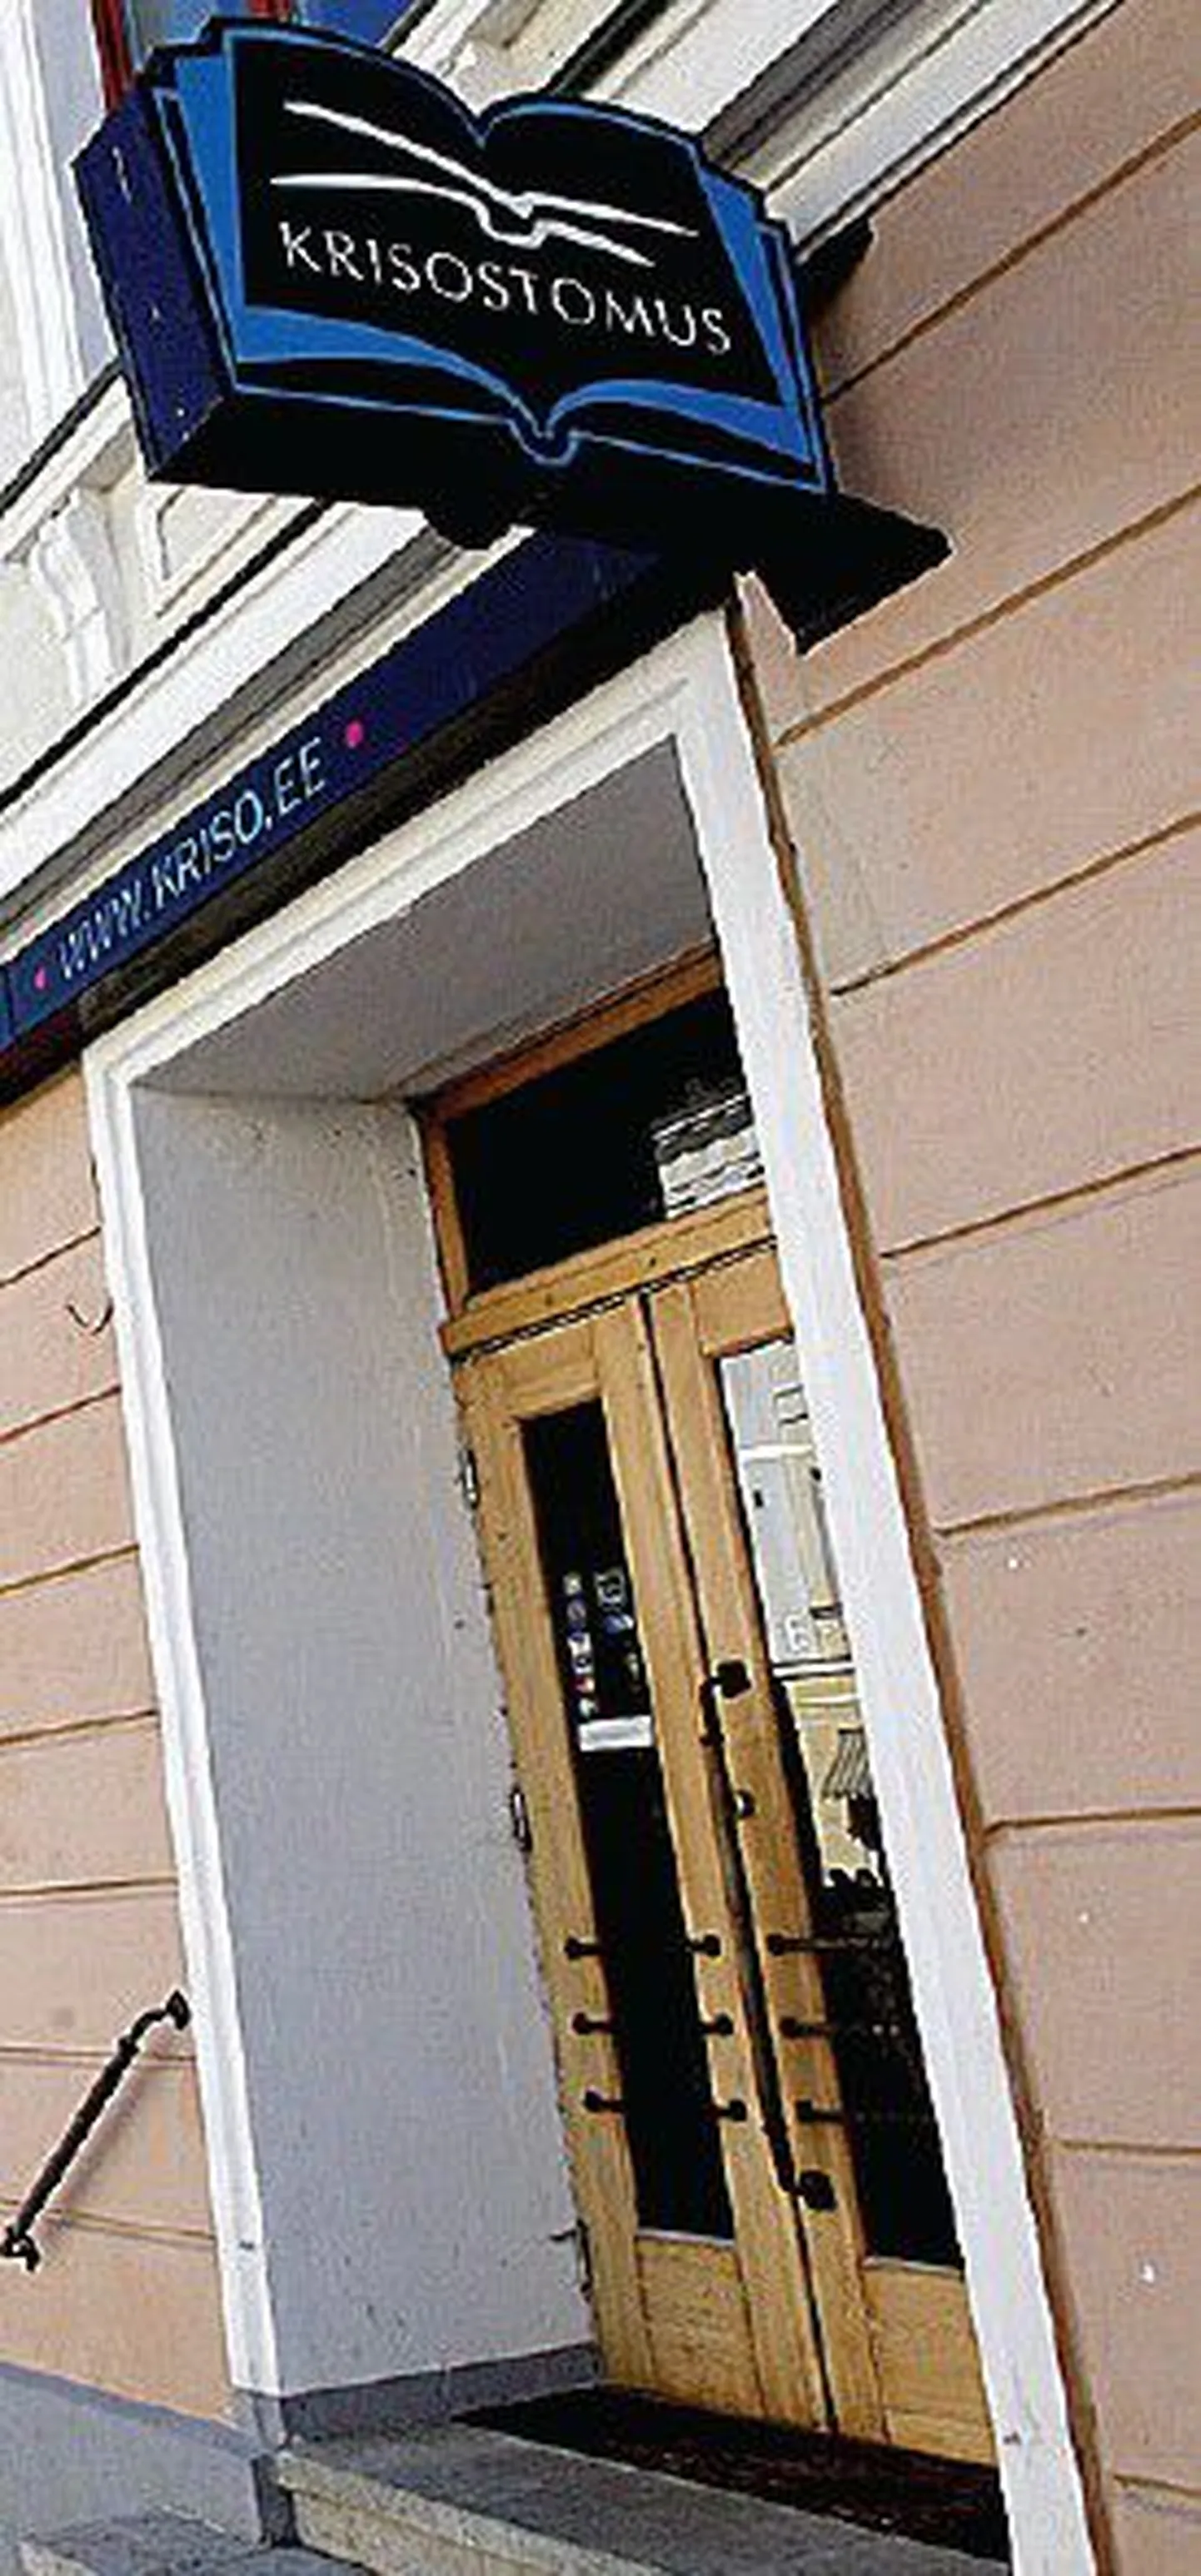 Tartu Ülikooli raamatupoe nüüdne omanik, raamatukauplus Krisostomus peab konkureerivat võõrkeelse teaduskirjanduse müügiga tegelevat kauplust ka Raekoja platsil.